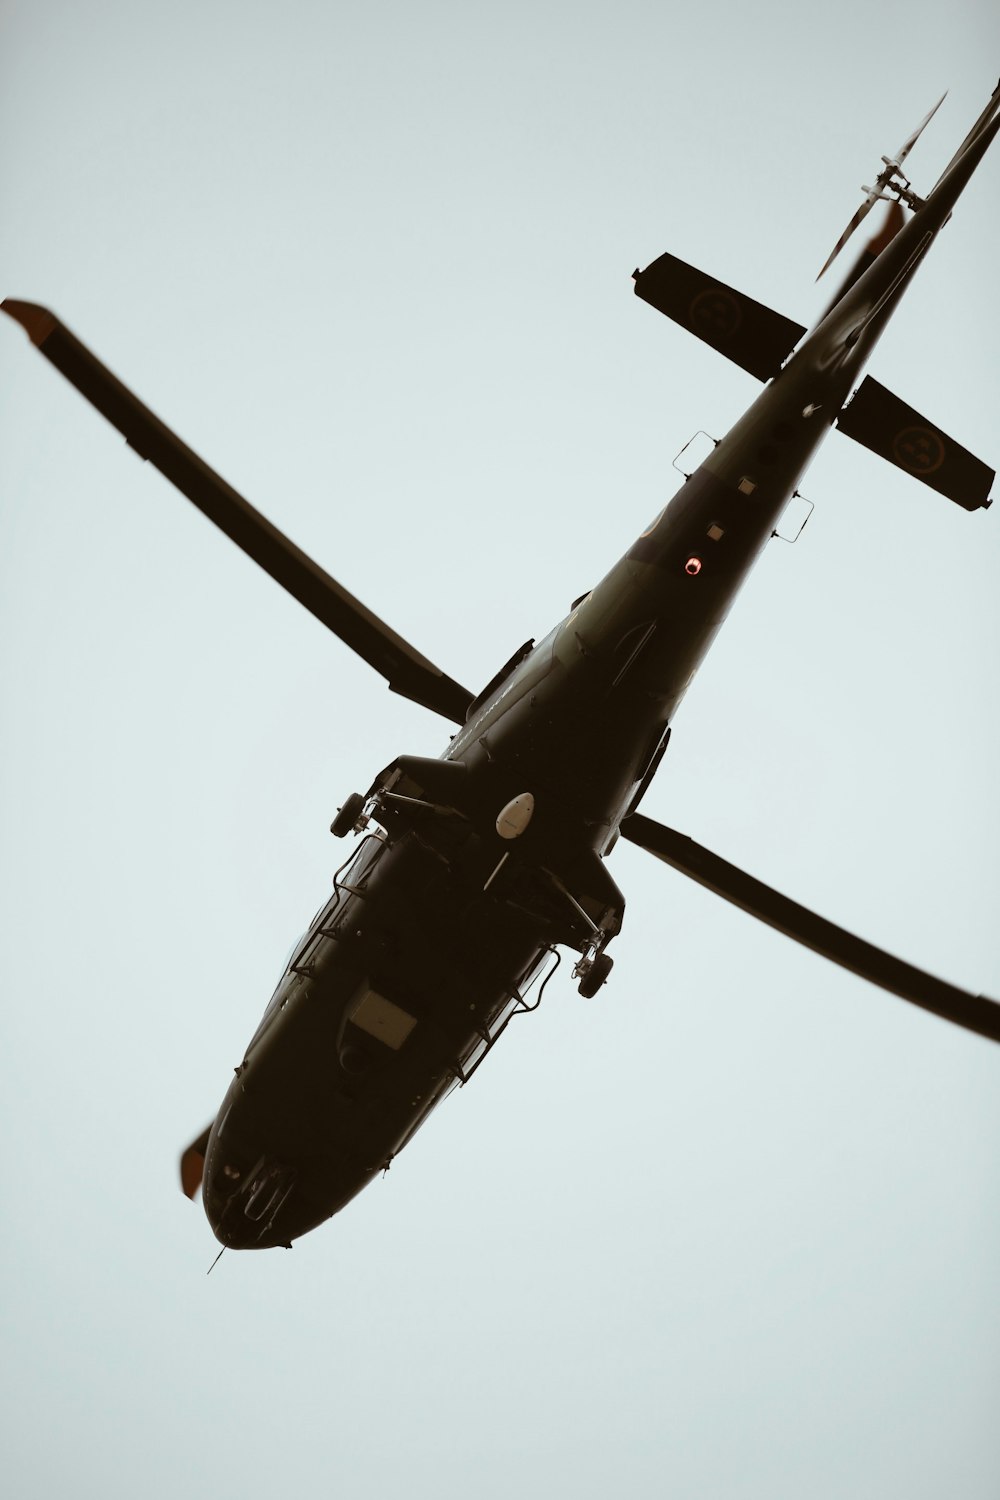 Brauner Hubschrauber am Himmel